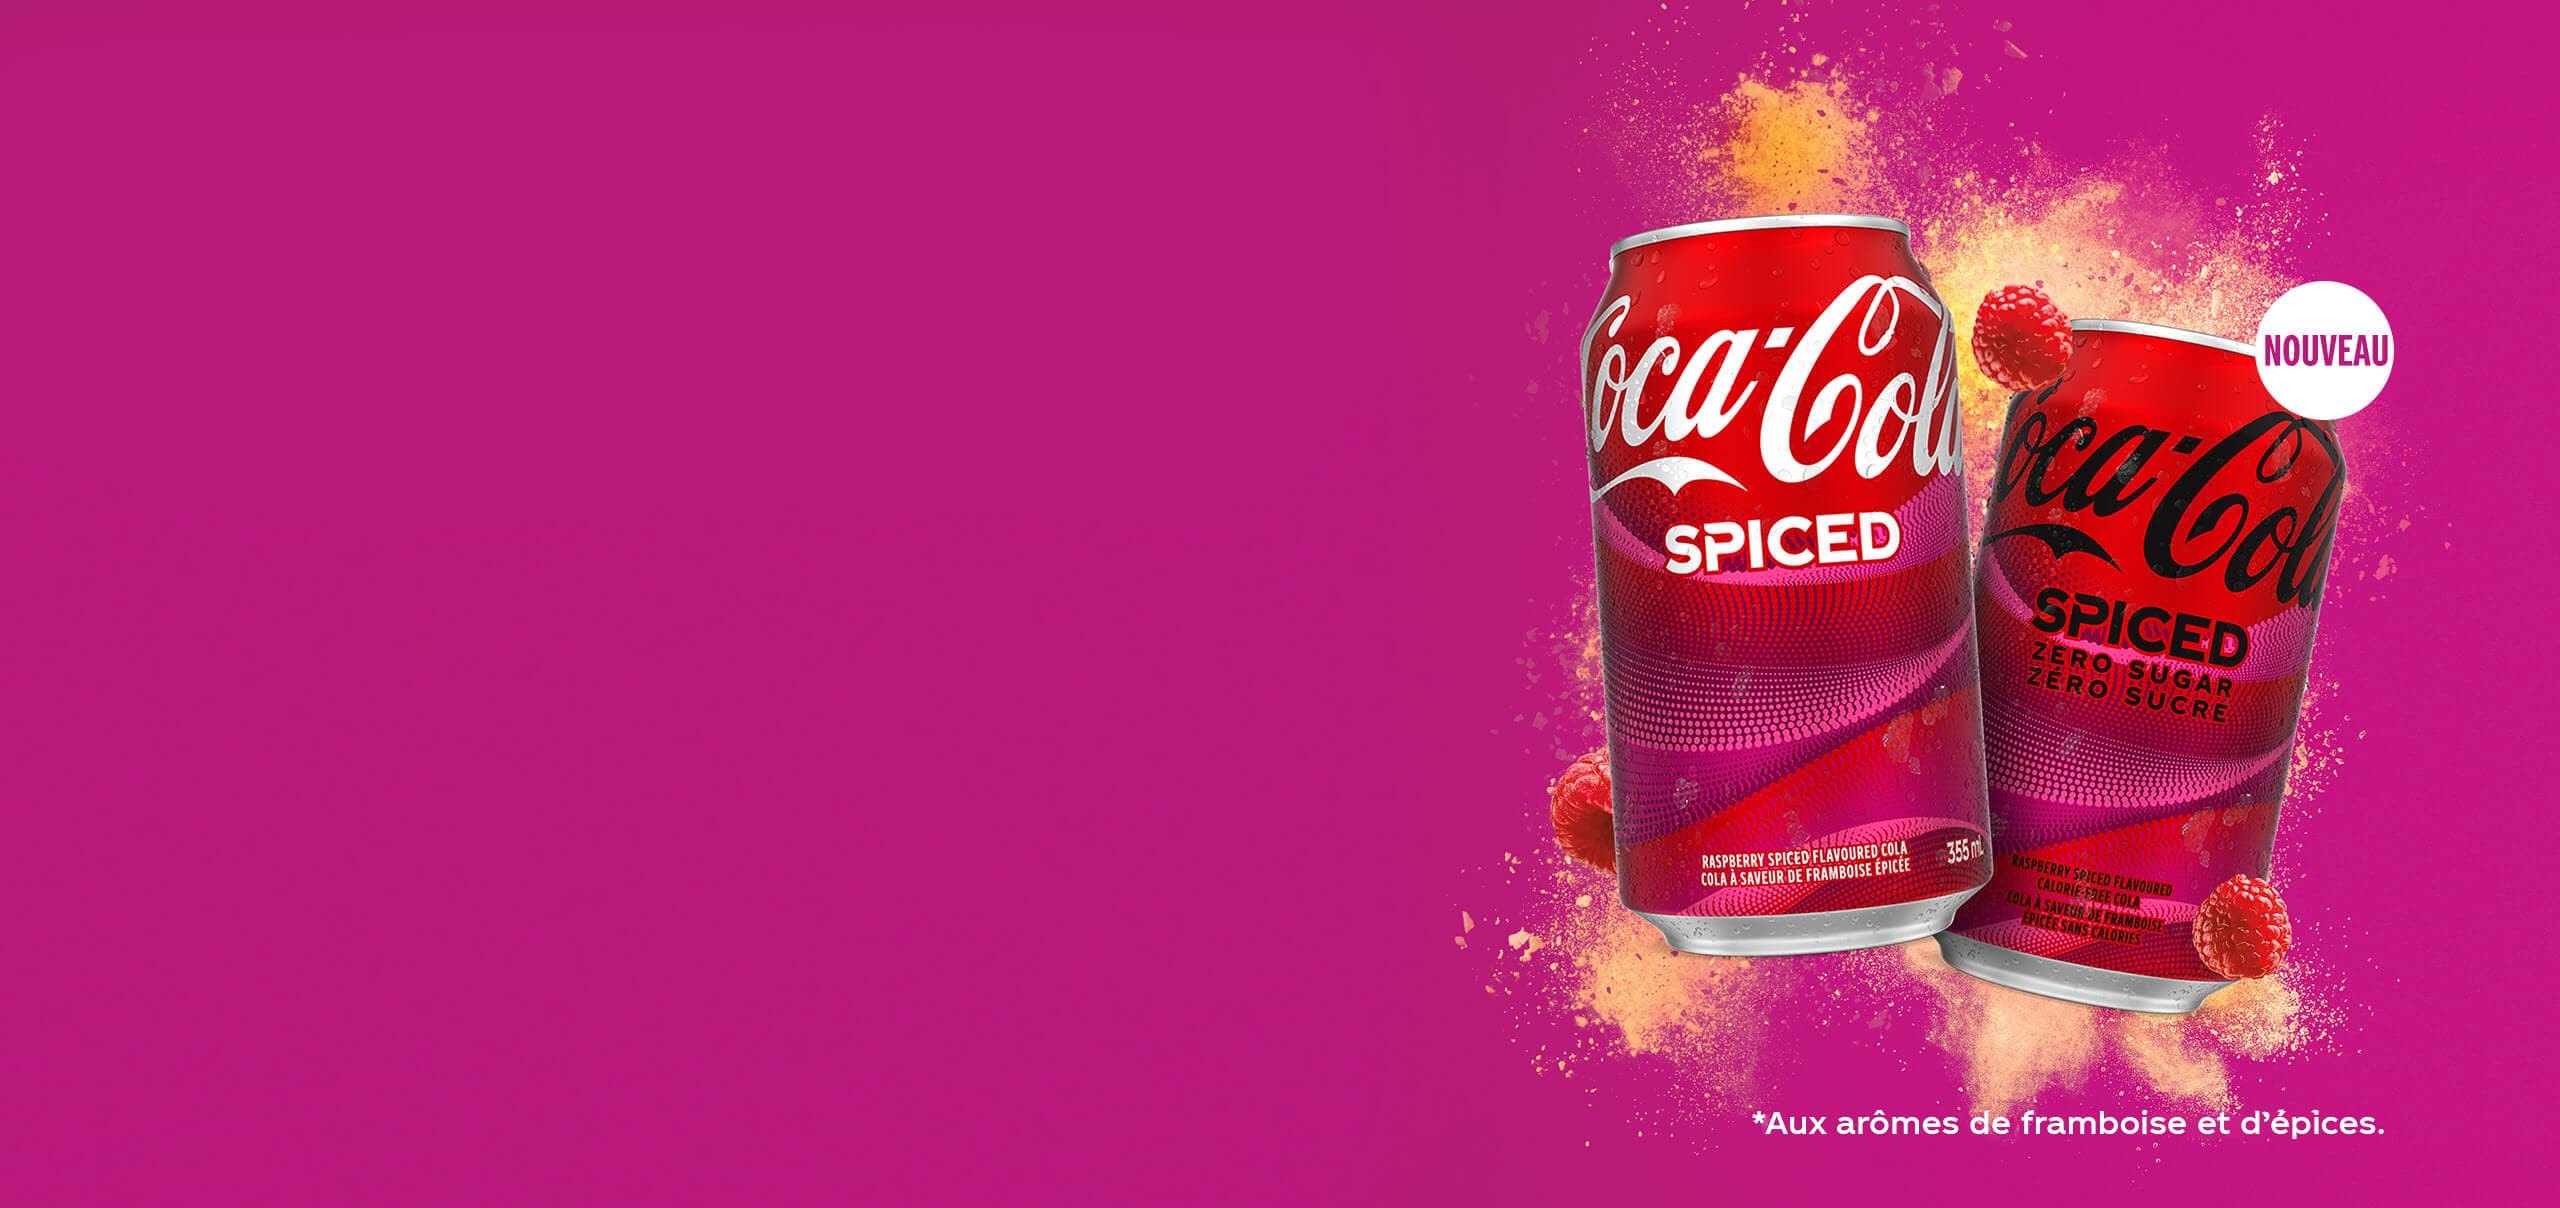 NOUVEAU Coca-Cola Spiced. *Aux arômes de framboise et d’épices.’